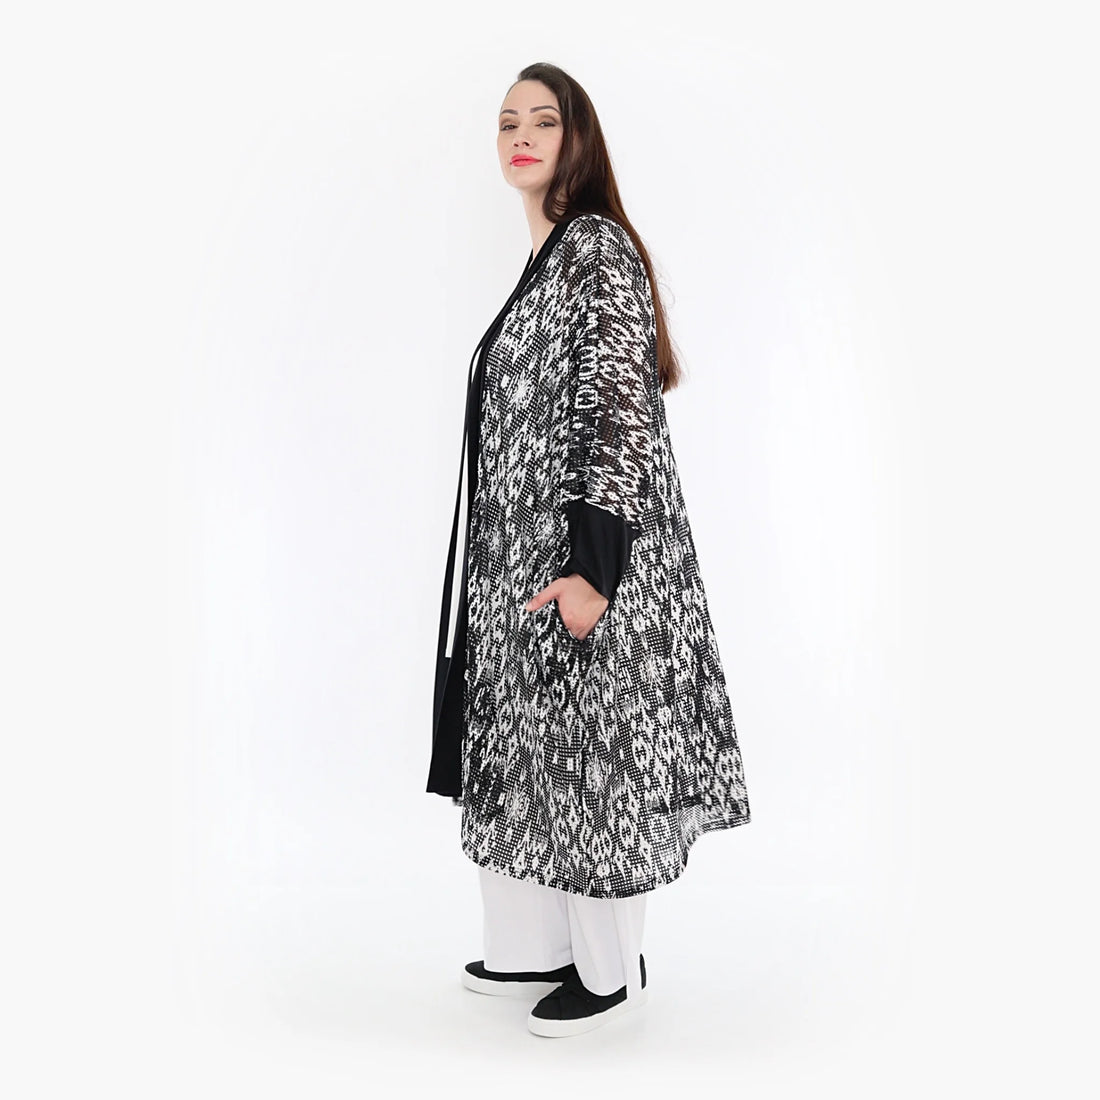 Jacke von AKH Fashion aus Viskose in gerader Form, 1324.06930, Schwarz-Weiß, Ausgefallen